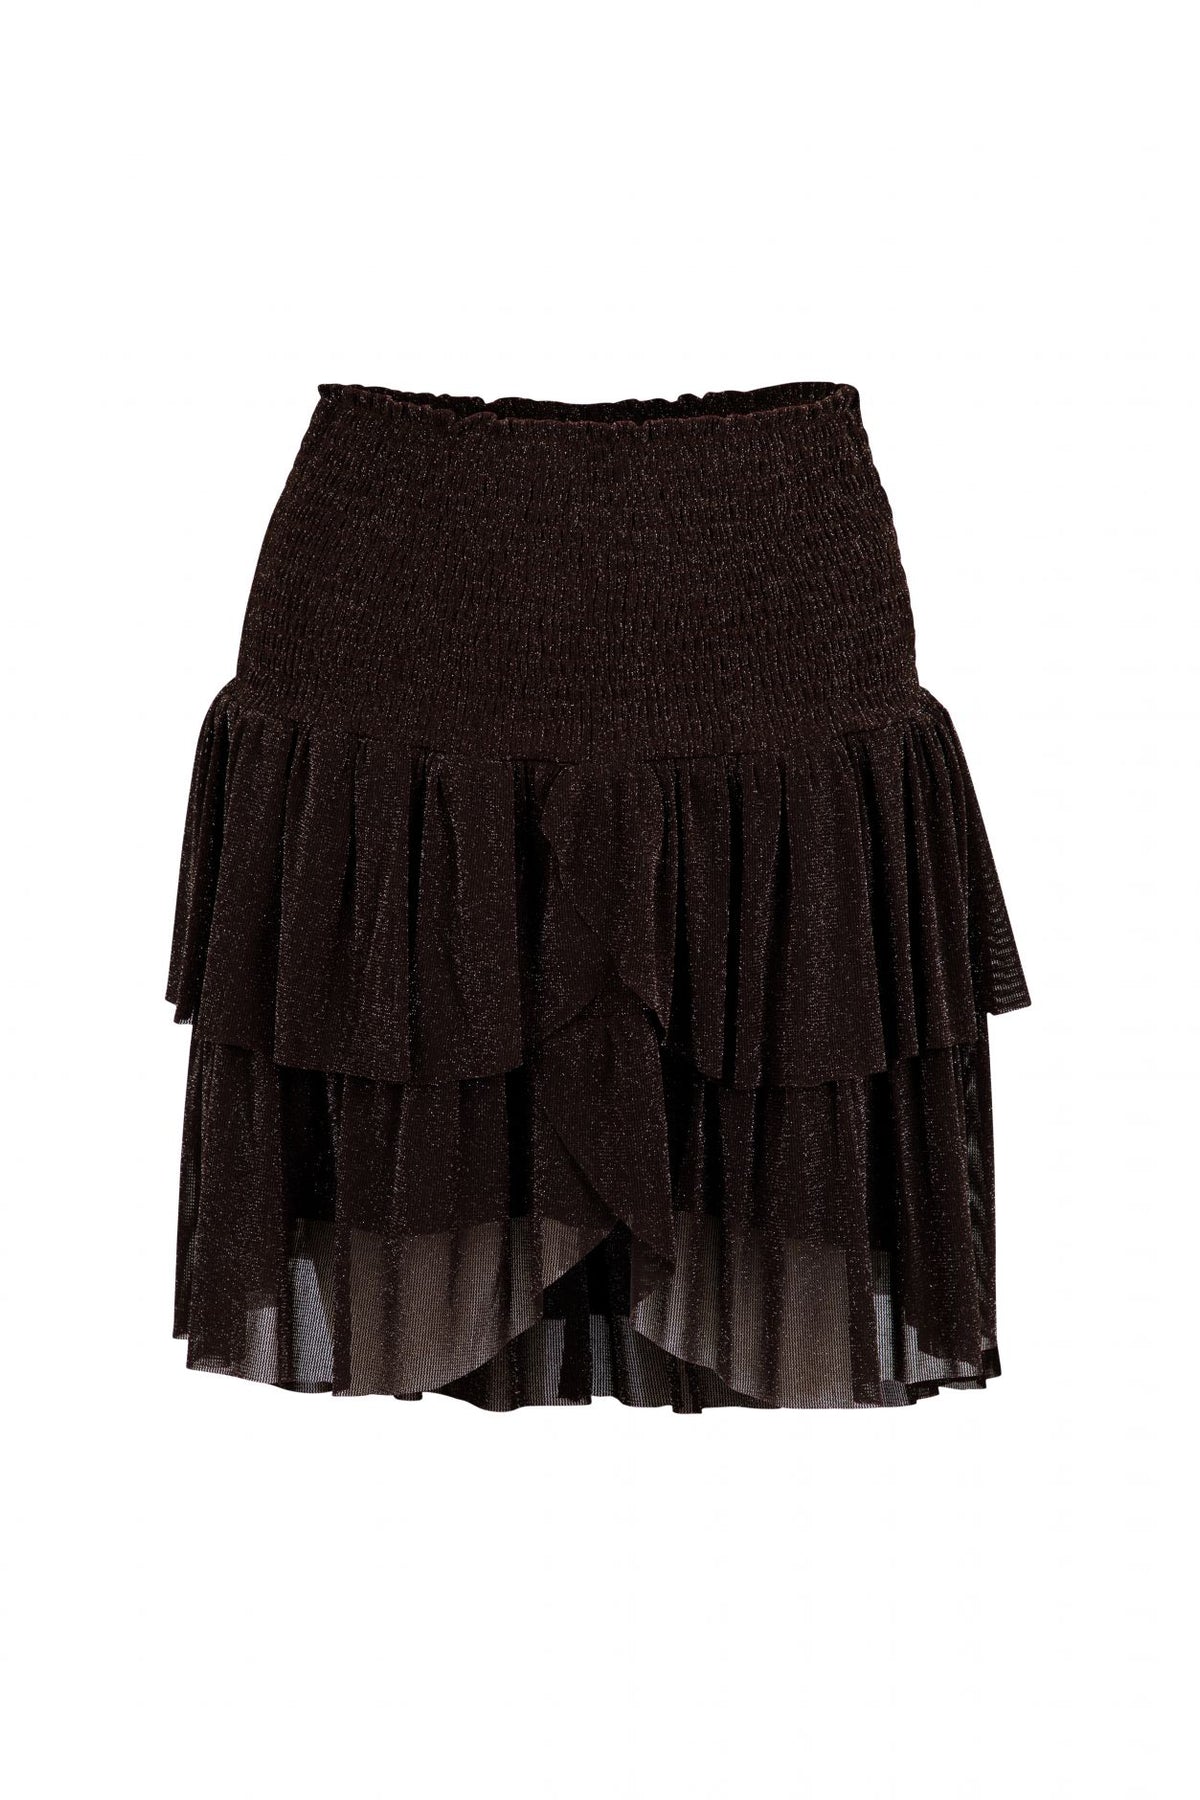 Carin Mesh Skirt - Chocolate Brown - Neo Noir - Skjørt - VILLOID.no